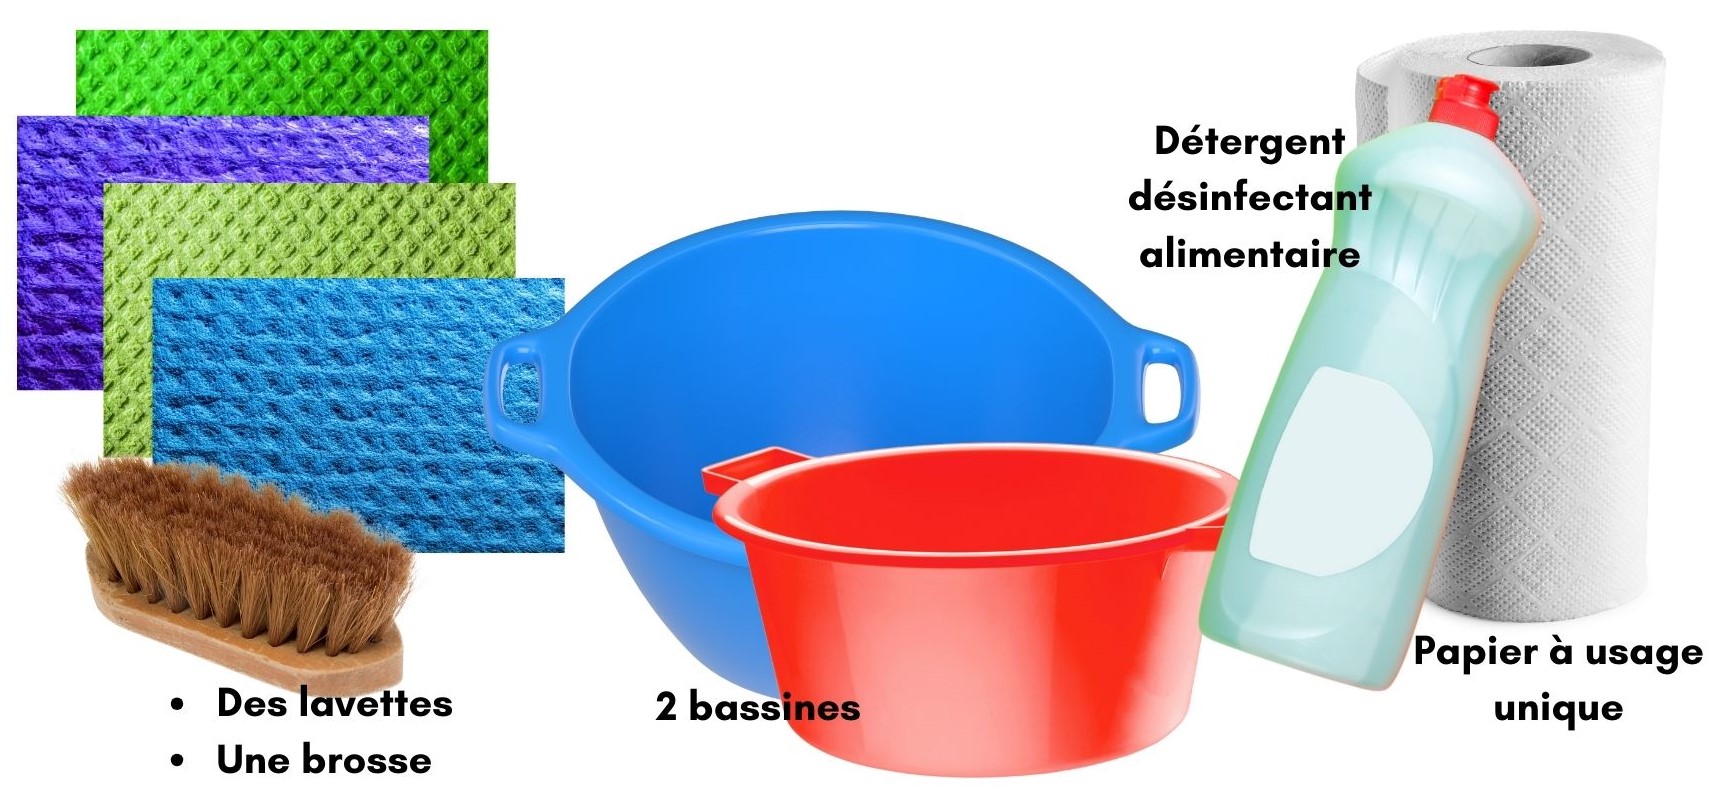 matériel jouets: lavettes, brosse, 2 bassines, détergent désinfectant alimentaire, papier à usage unique